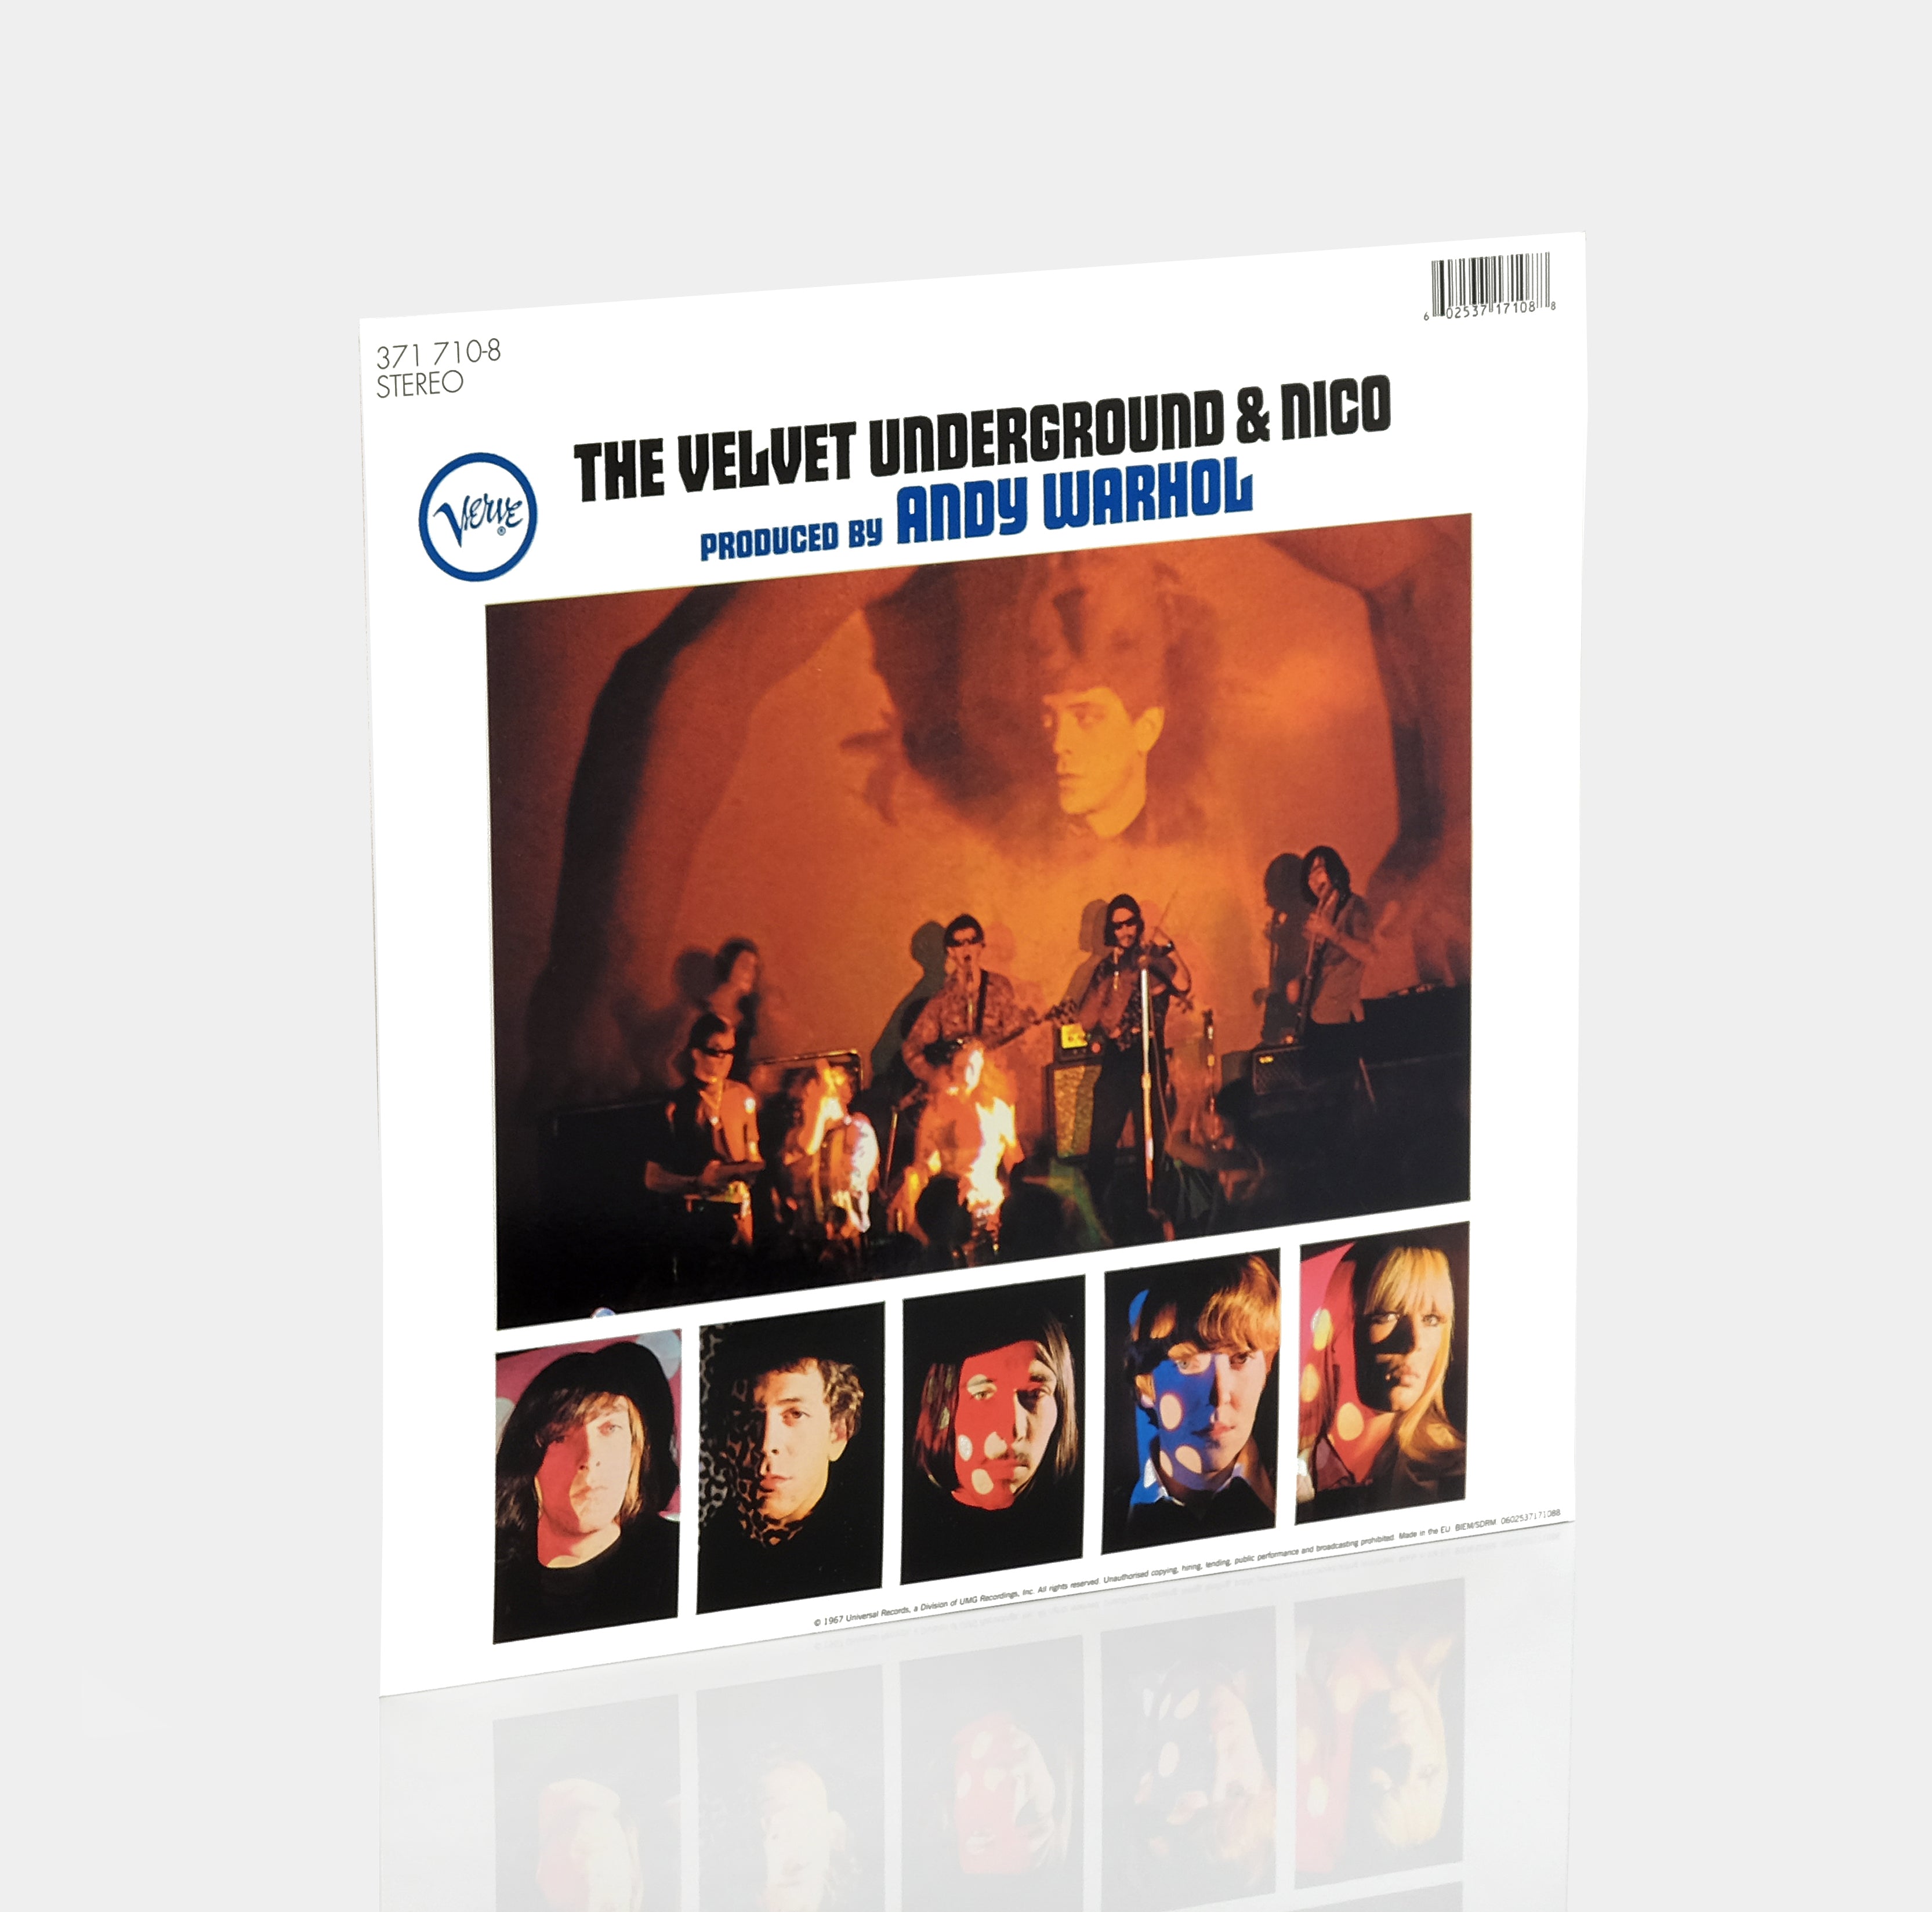 The Velvet Underground & Nico - The Velvet Underground & Nico LP Vinyl Record